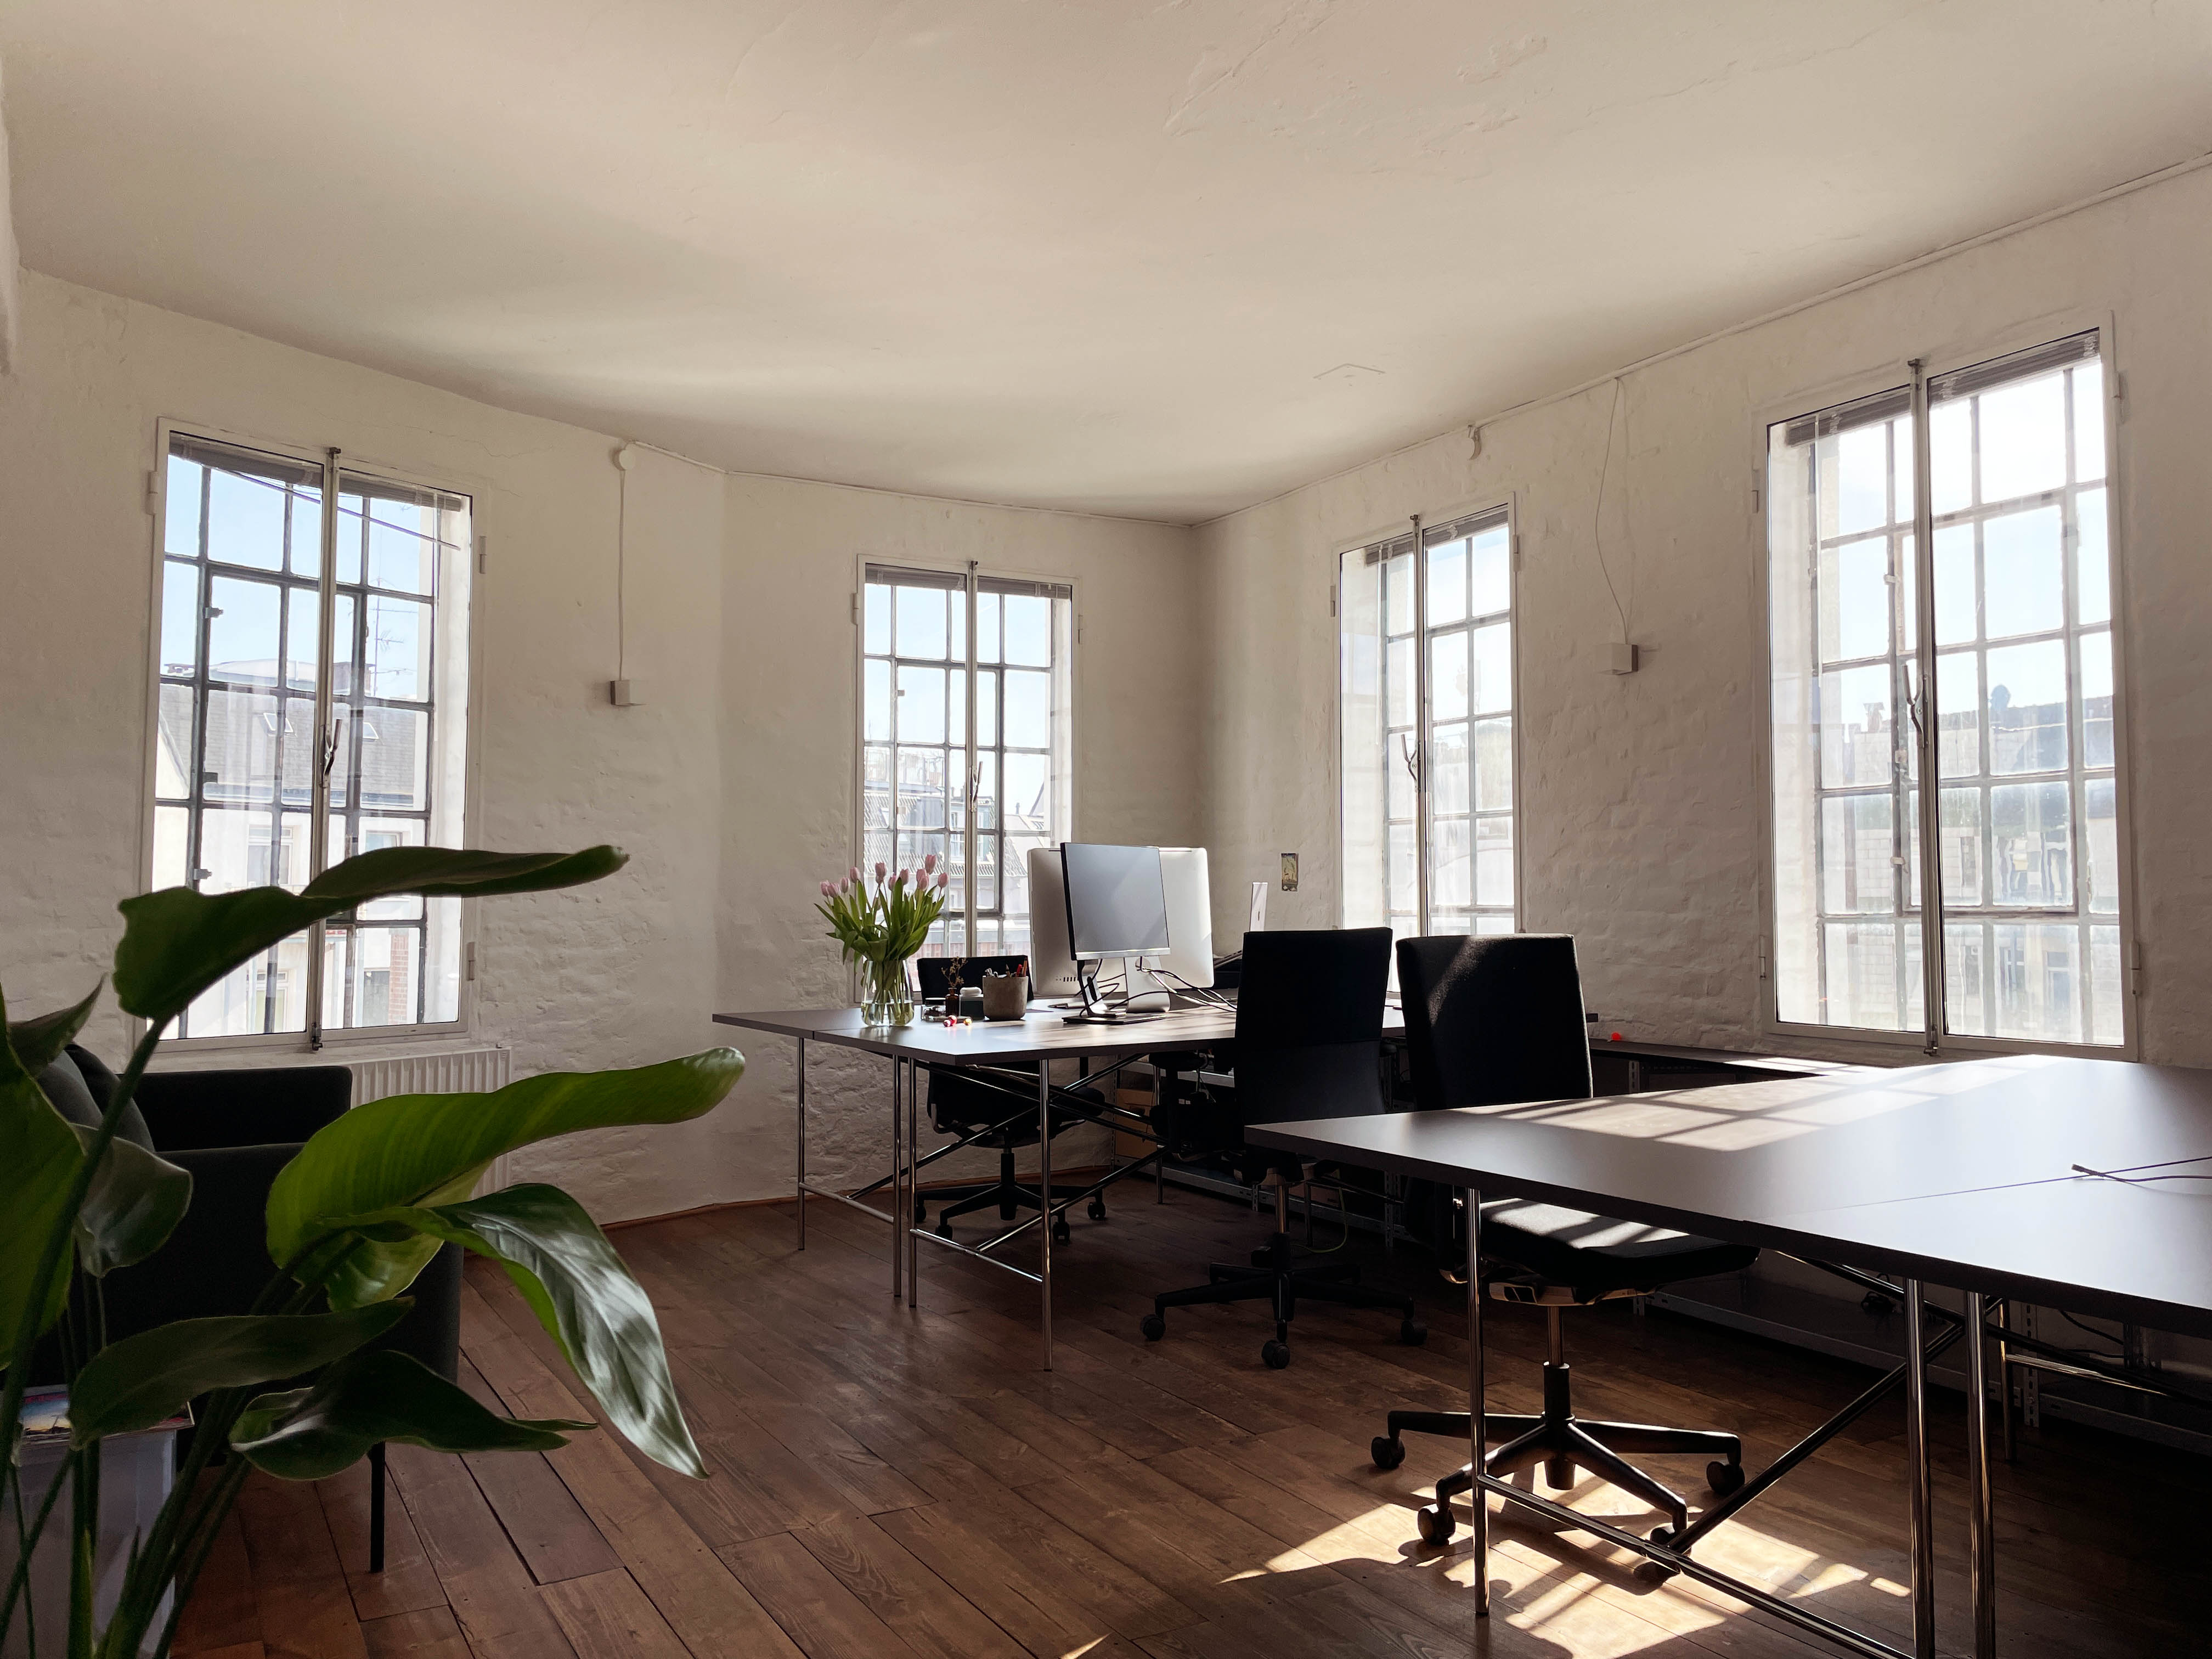 Schreibtischplatz / Arbeitsplatz / Büroplatz in hellem Loft - 